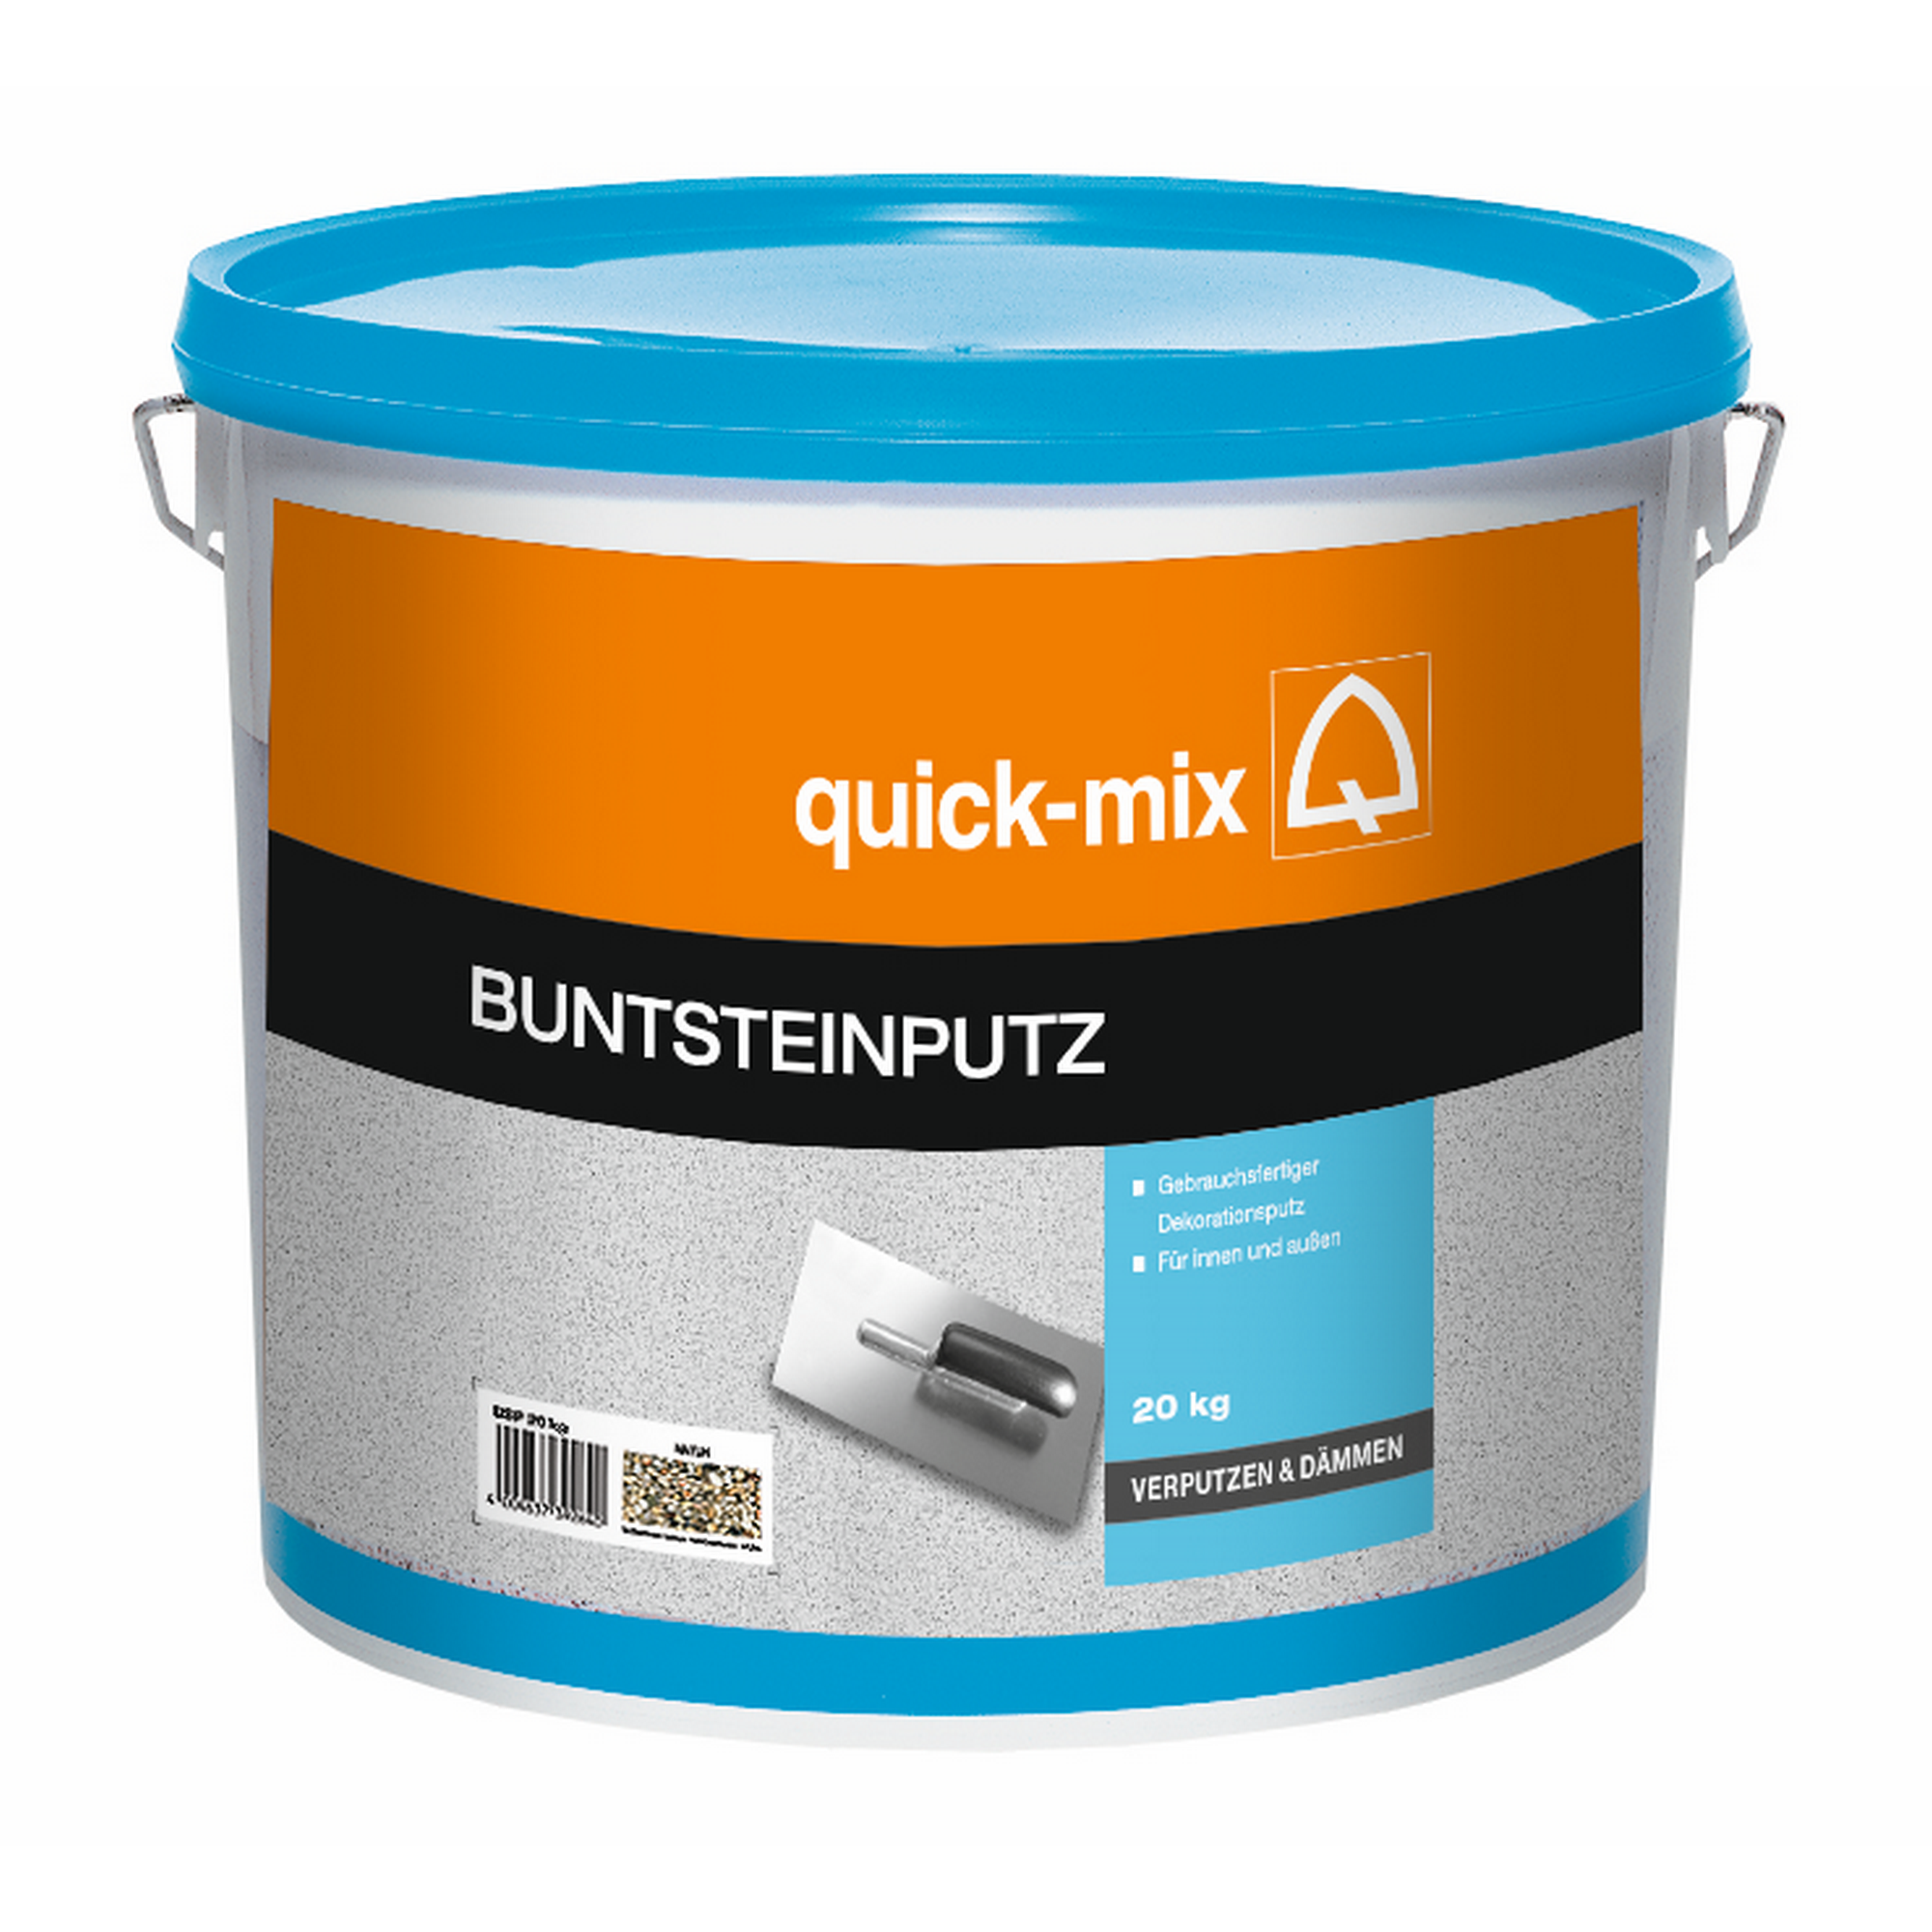 Buntsteinputz 20 kg + product picture